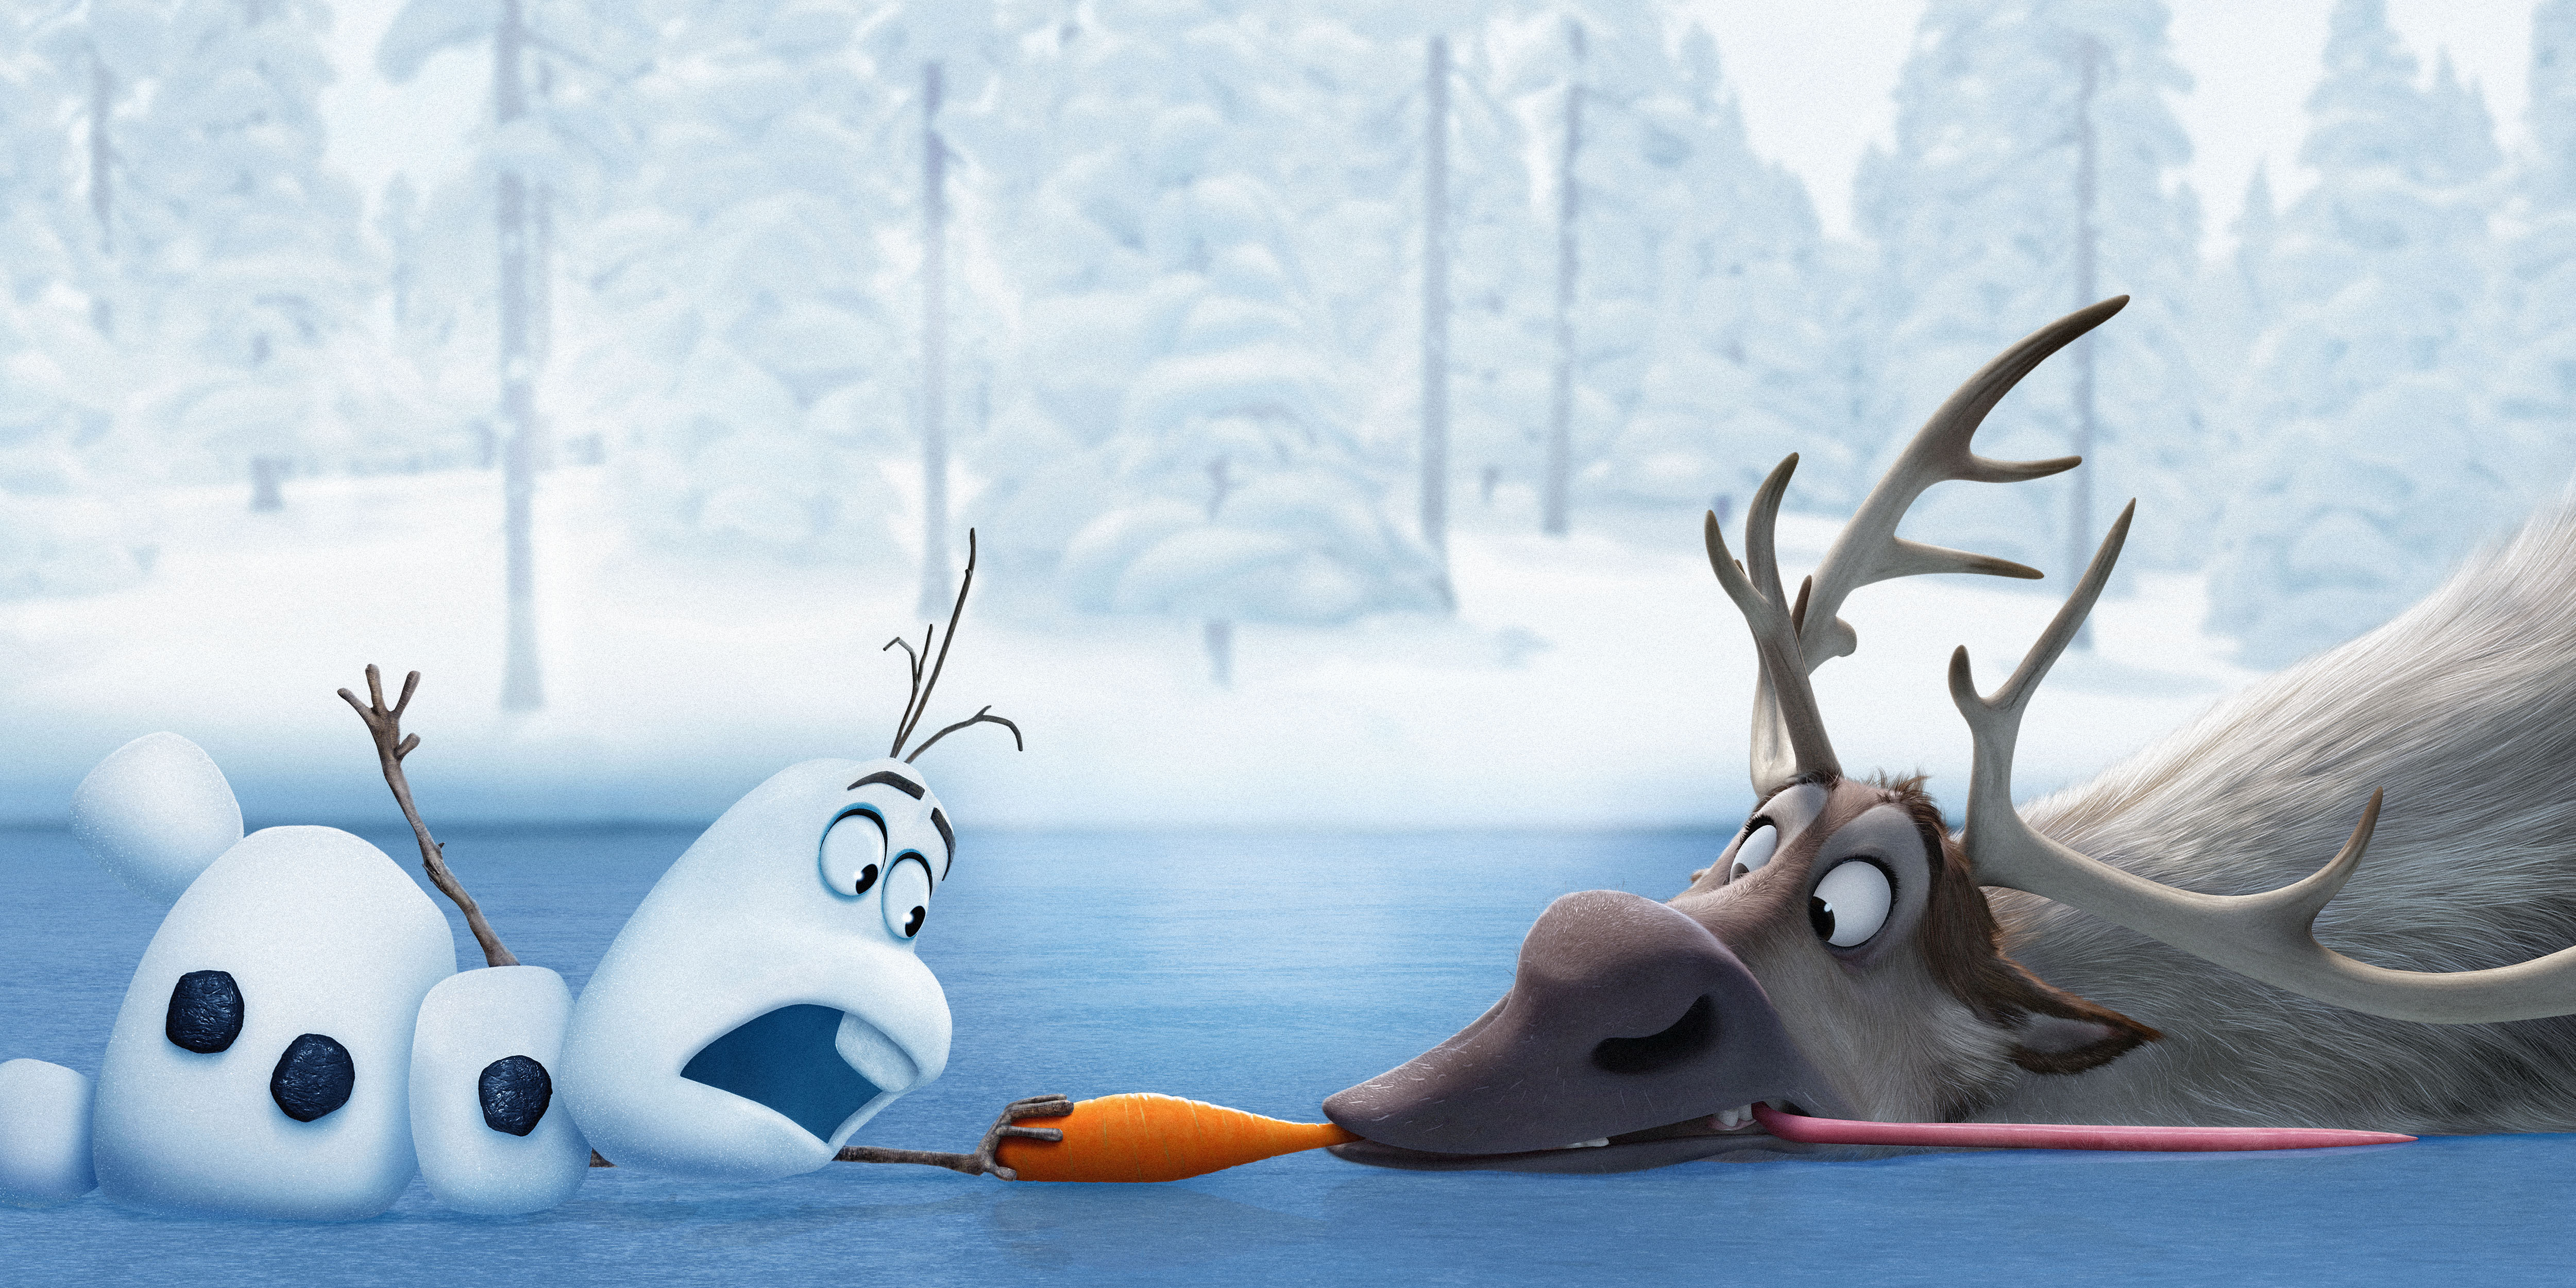 Disney Frozen Wallpaper Olaf